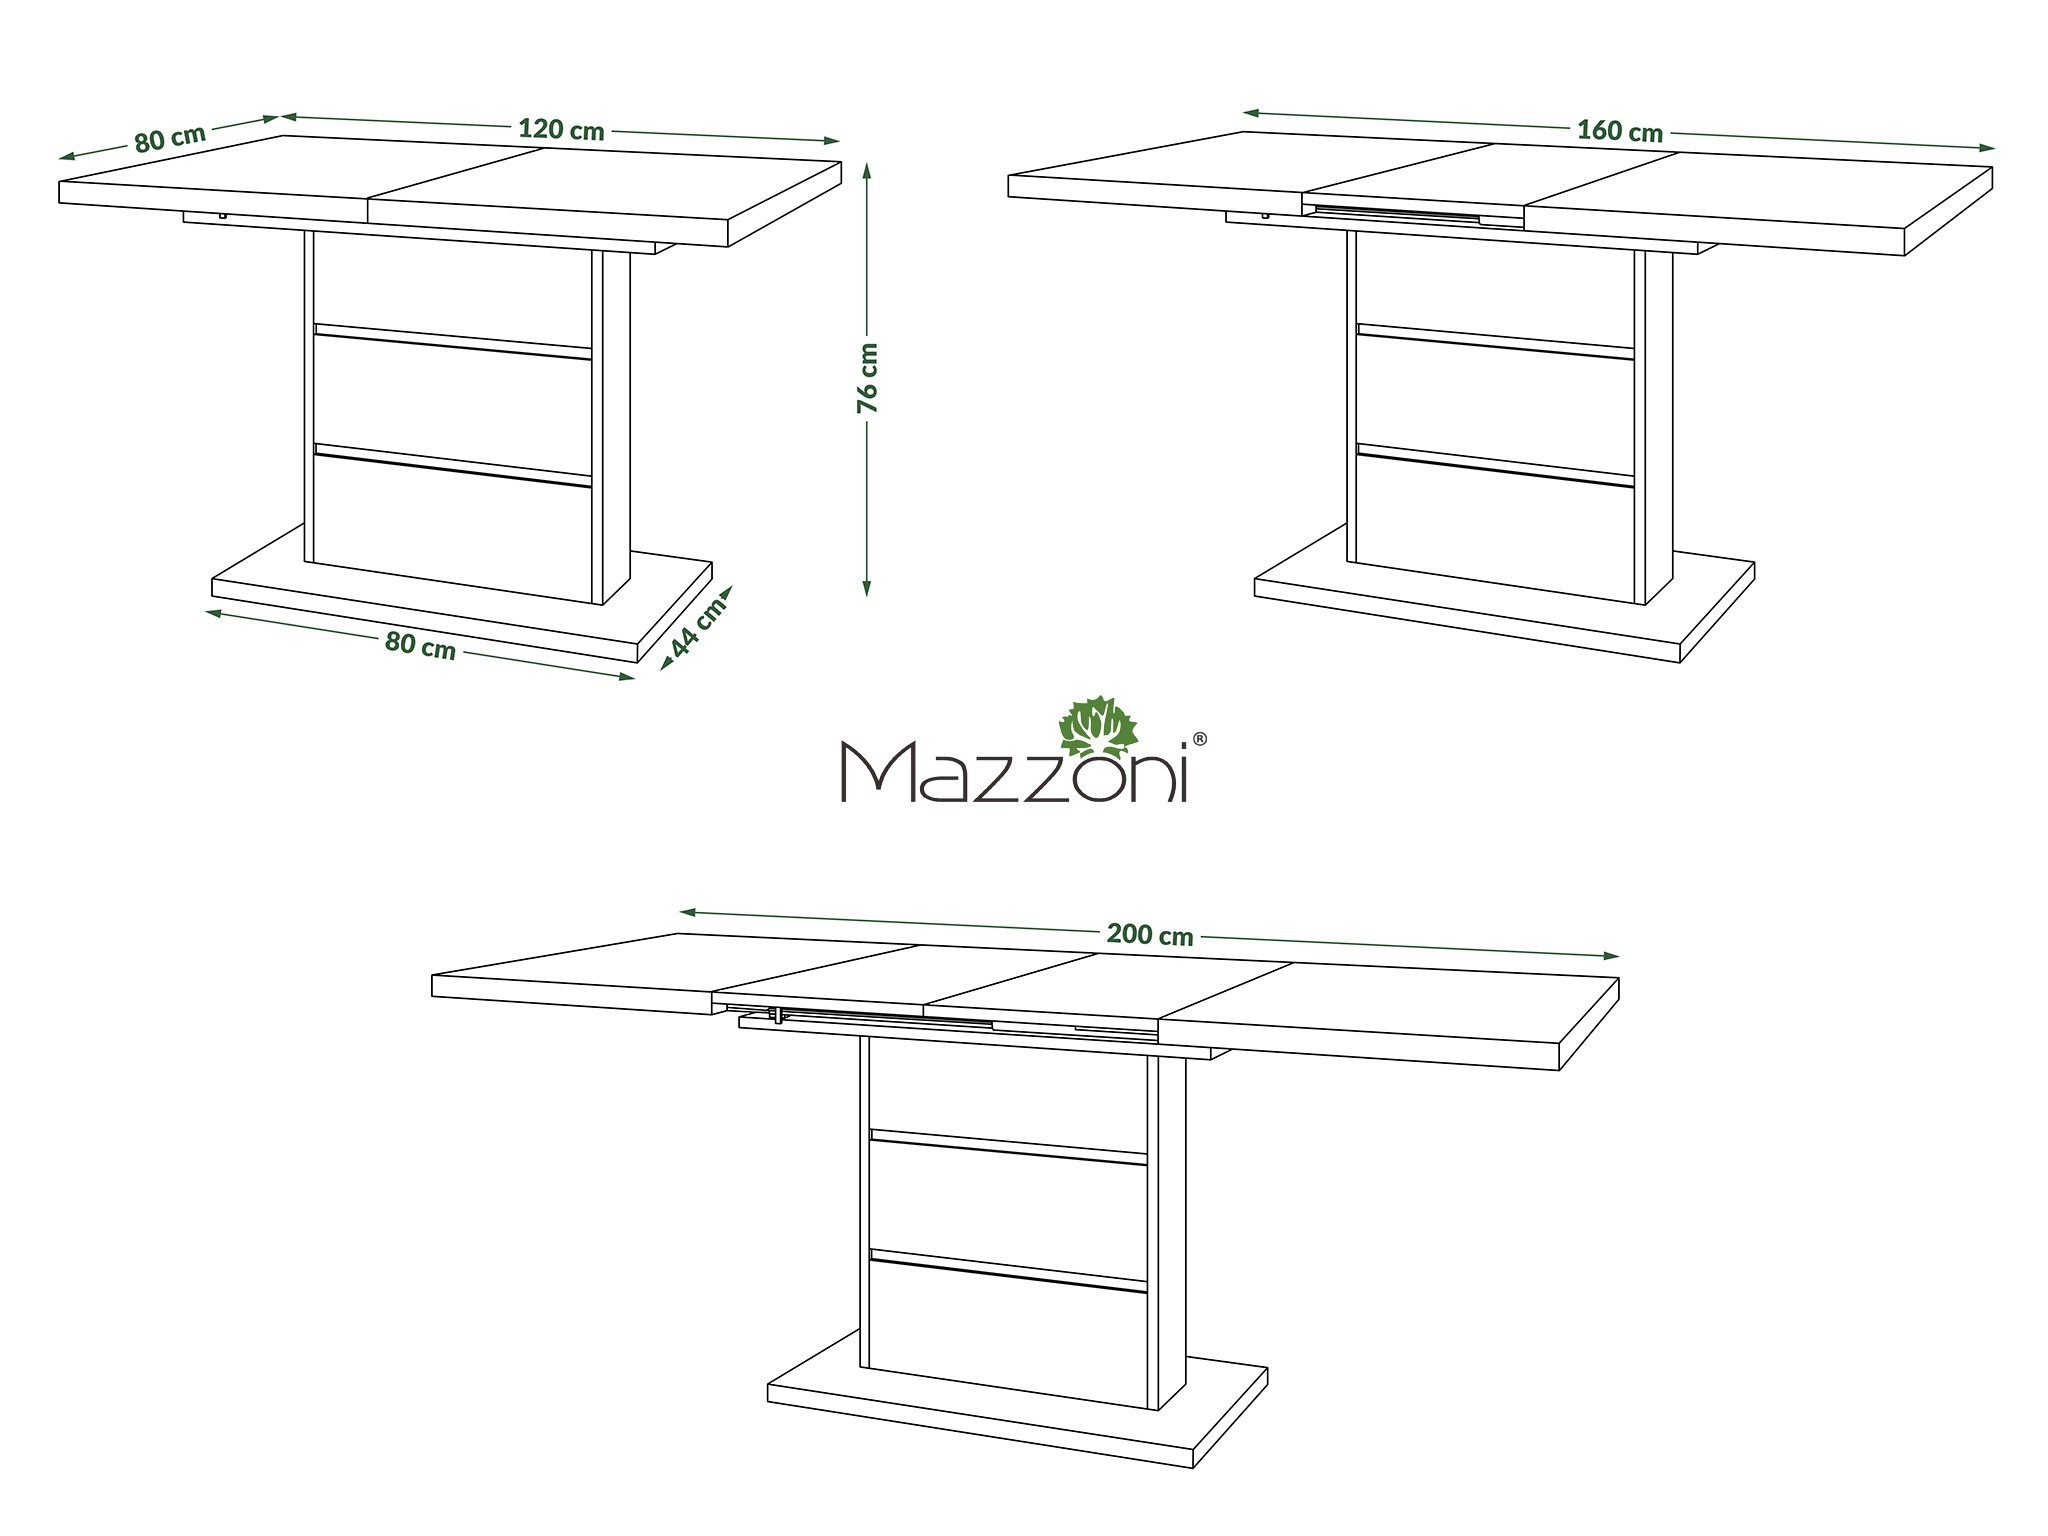 cm 200 Weiß Piano Beton Design Esstisch ausziehbar Tisch 120 matt / Mazzoni - Esstisch Weiß Beton